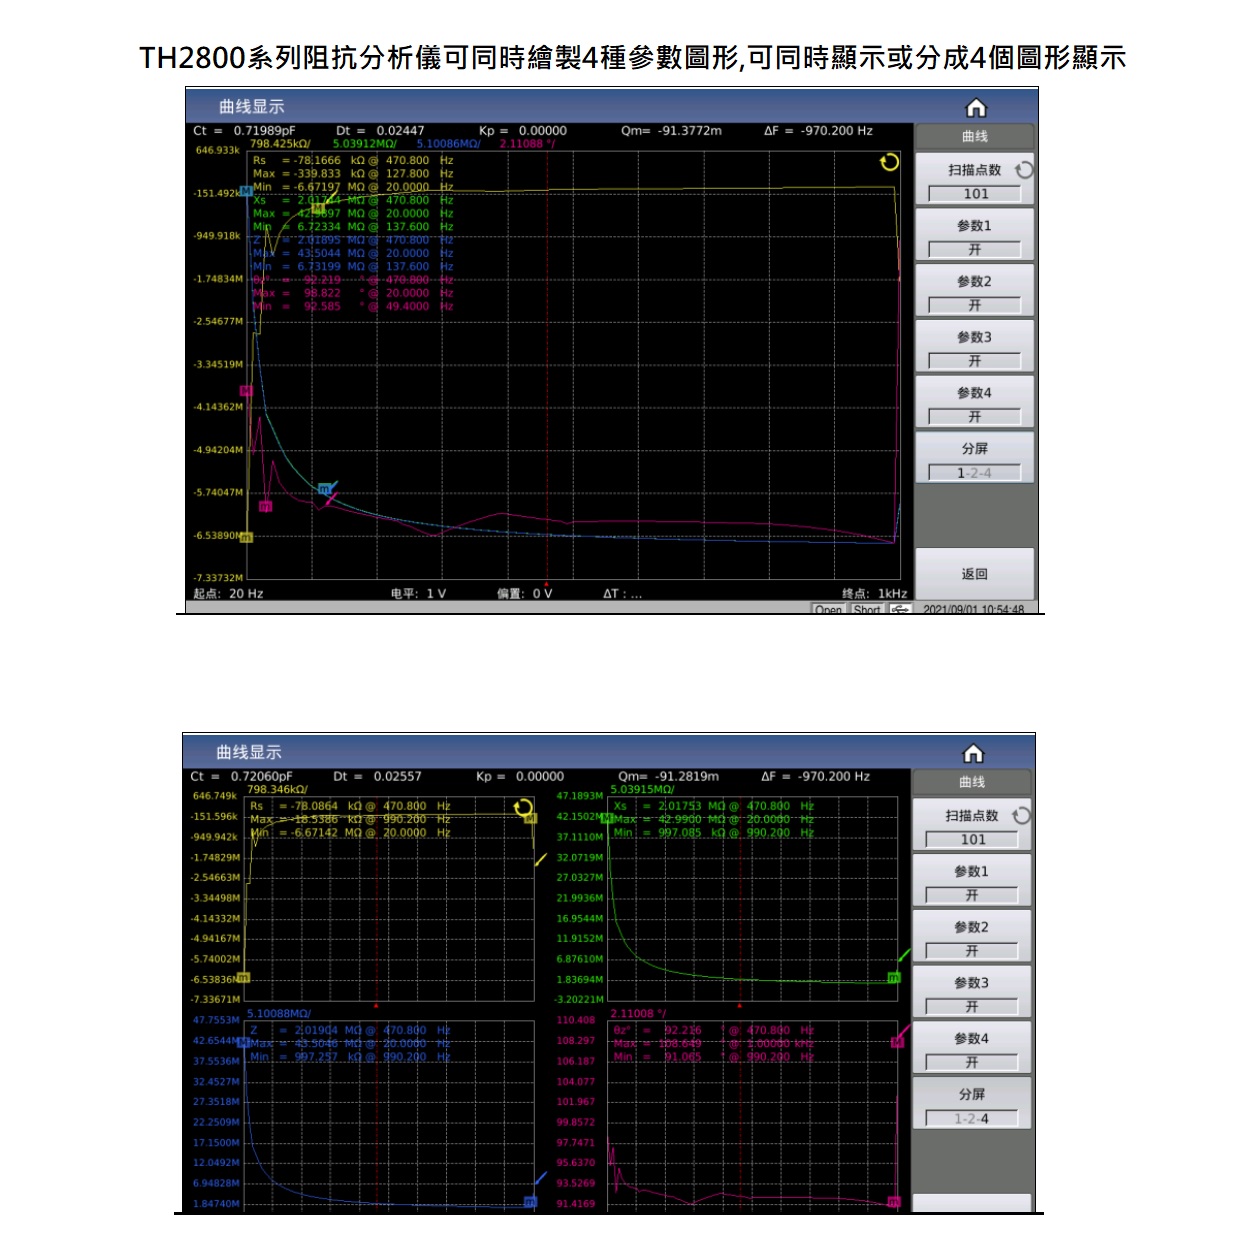 TH2840B 自動元件分析儀圖形繪製功能及分割螢幕顯示功能